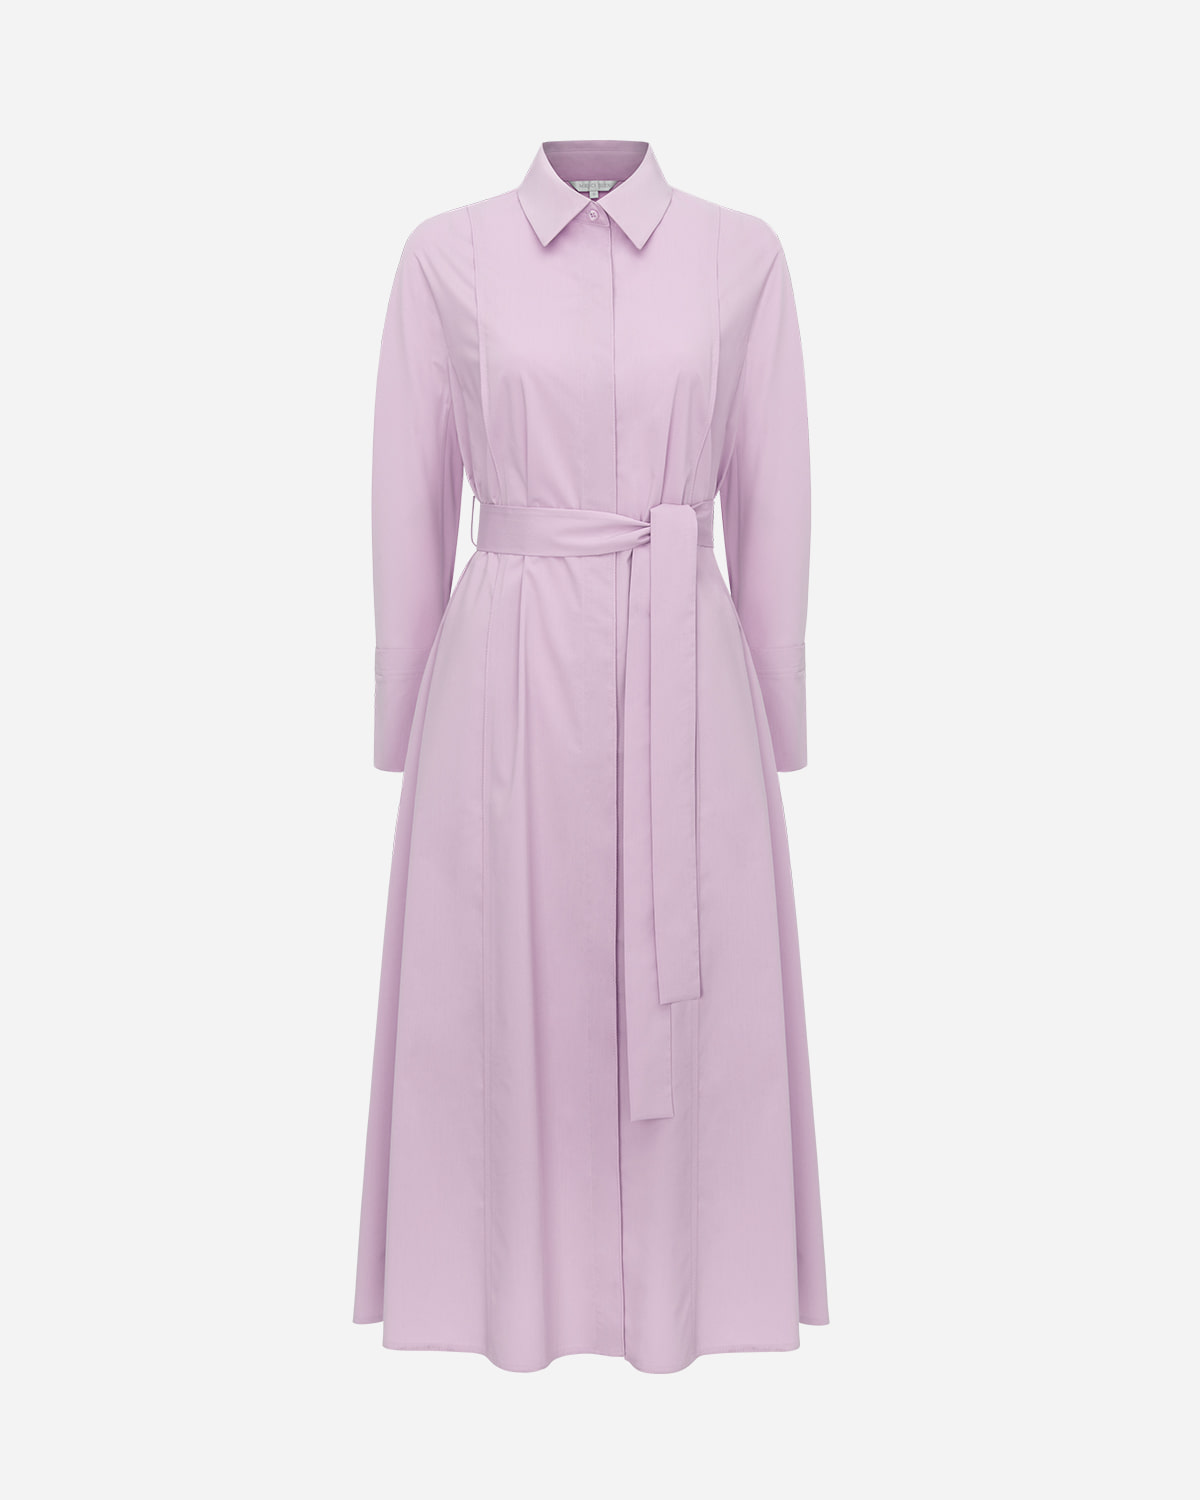 이삐 셔츠 드레스 숏/롱 (light purple)